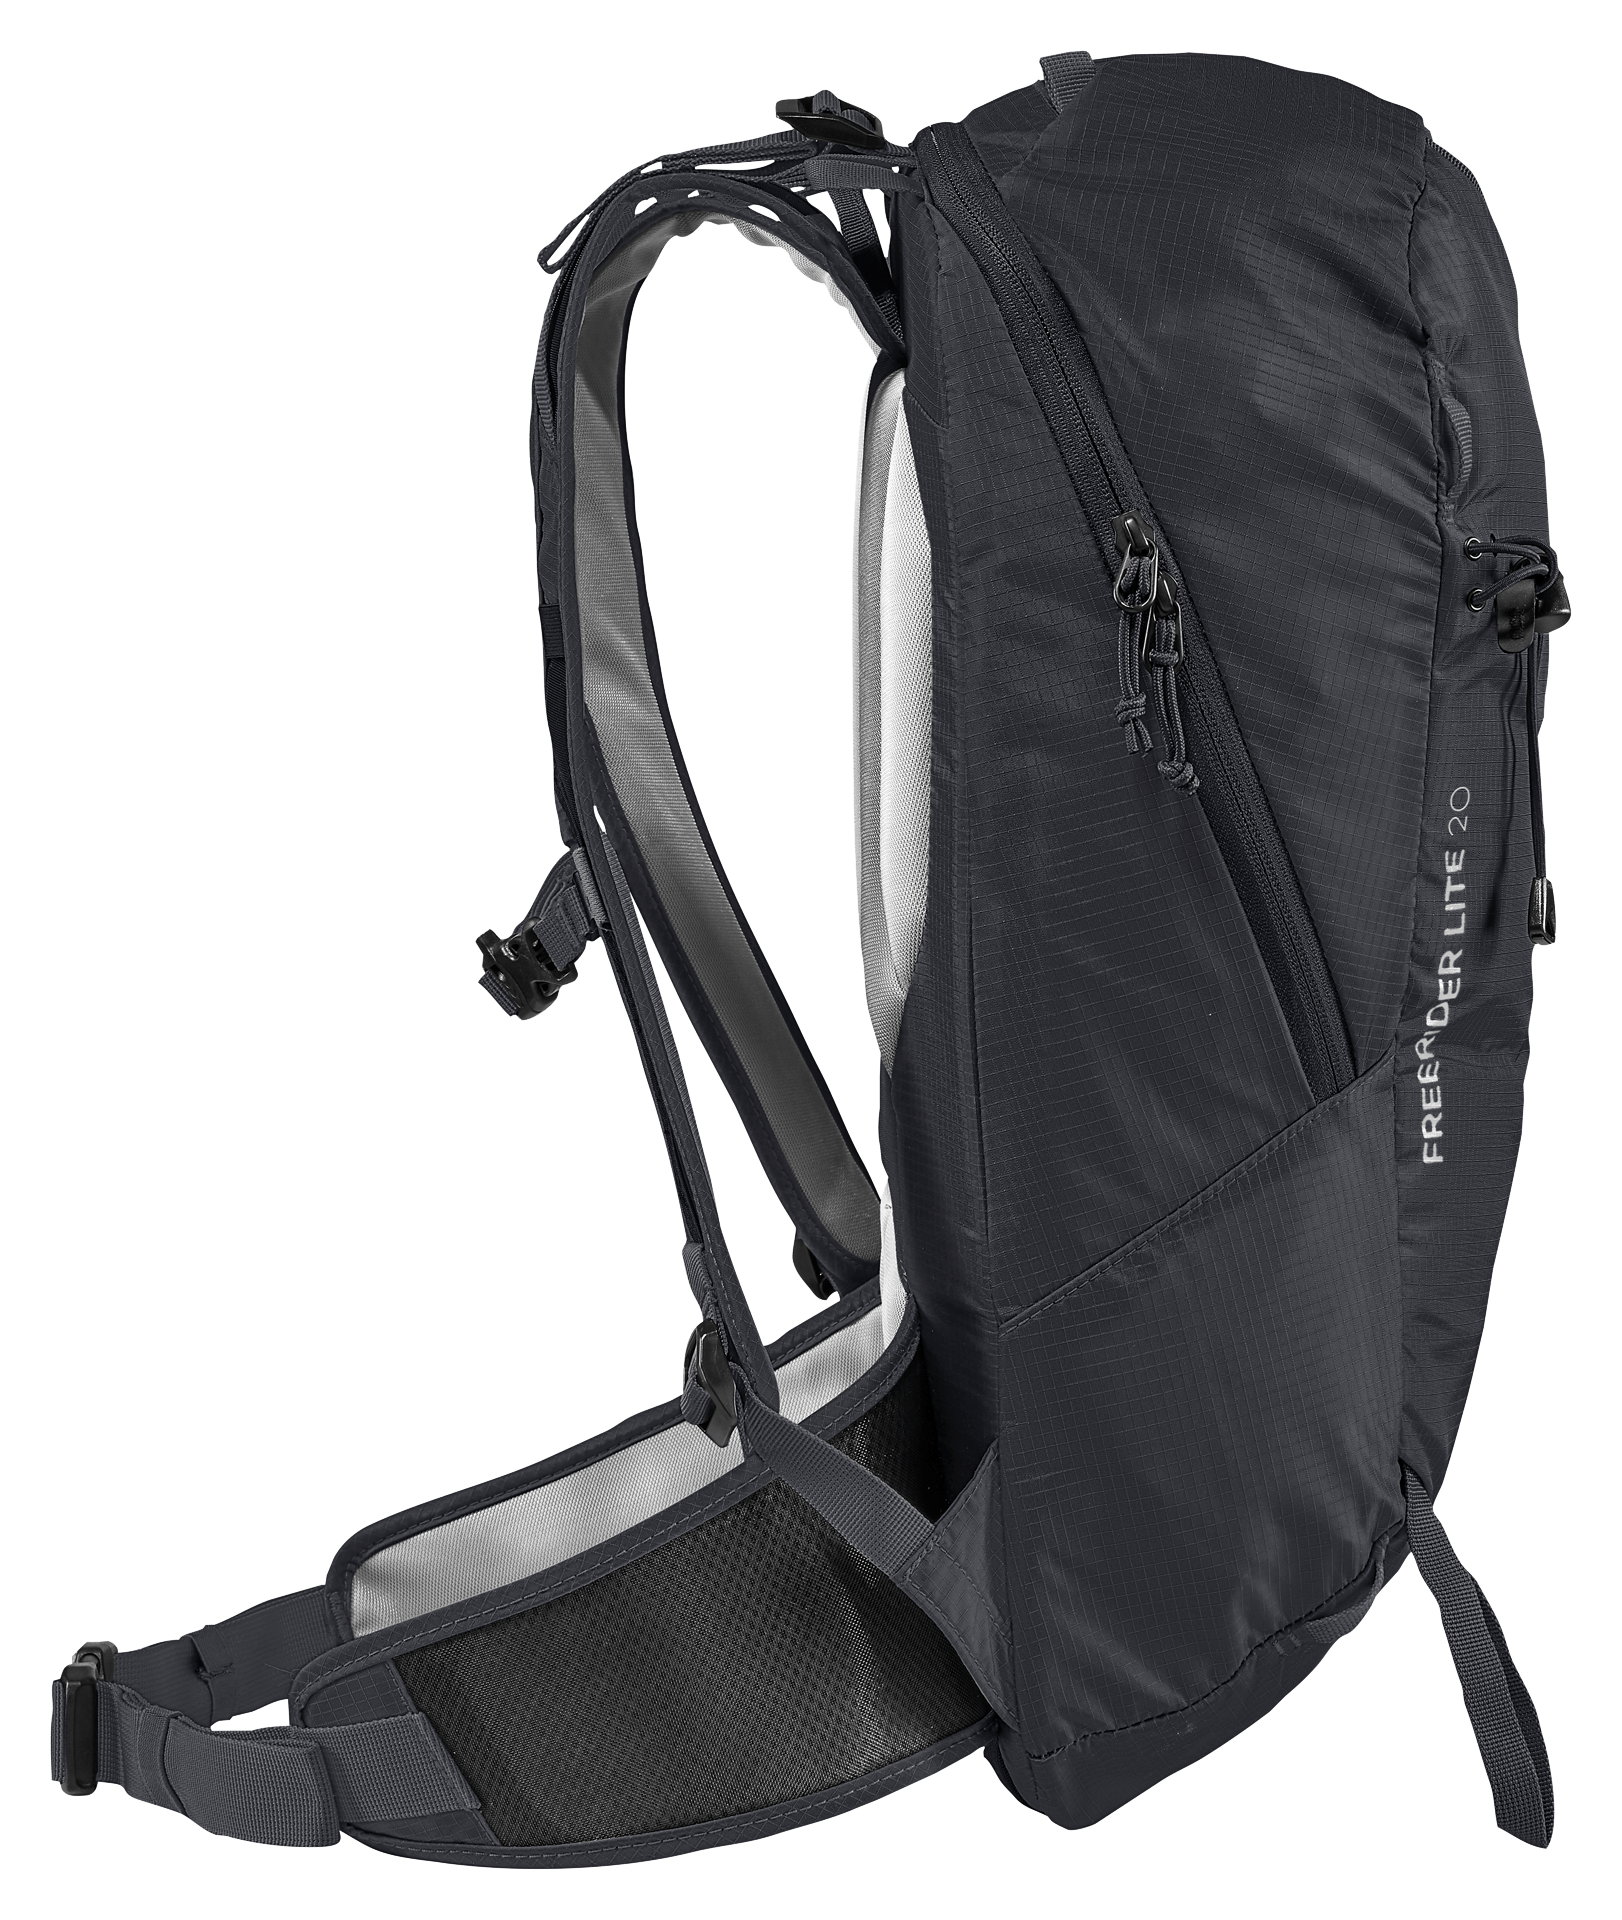 Deuter Freerider Lite 20 Backpack